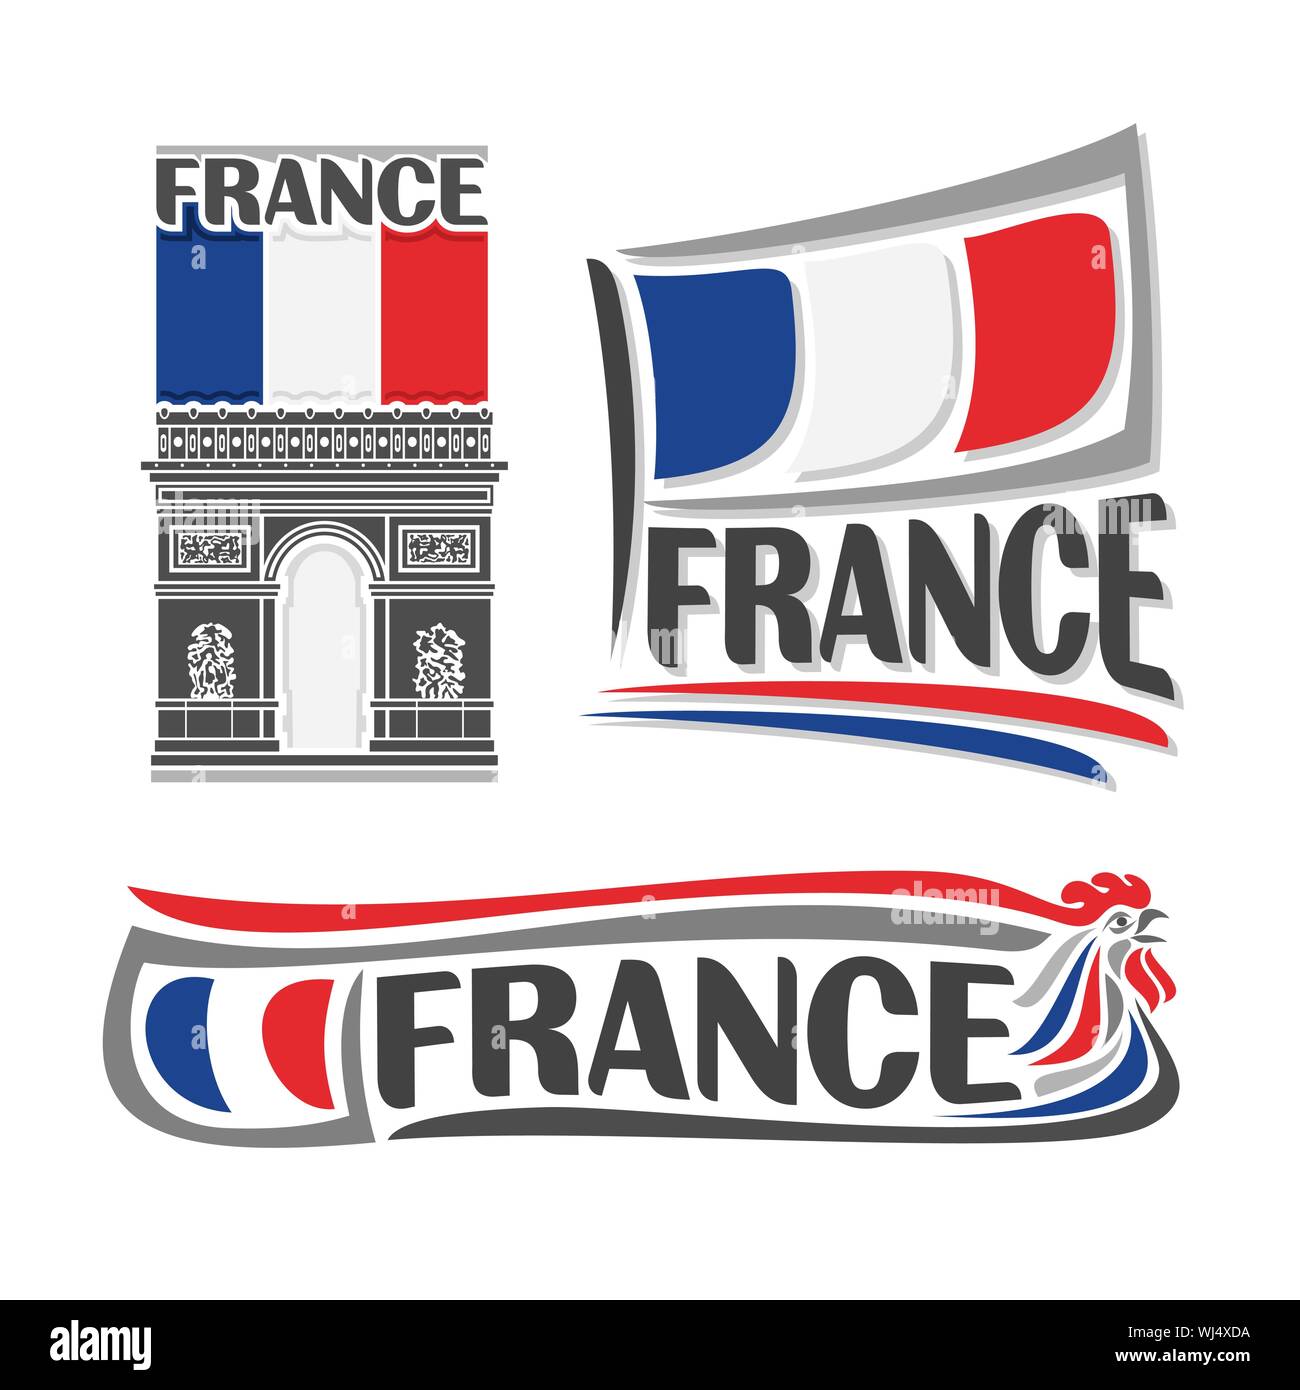 Illustrazione Vettoriale del logo per la Francia, 3 illustrazioni isolate: nazionale francese di flag di stato del Arc de Triomphe, simbolo orizzontale di architetto in Francia Illustrazione Vettoriale